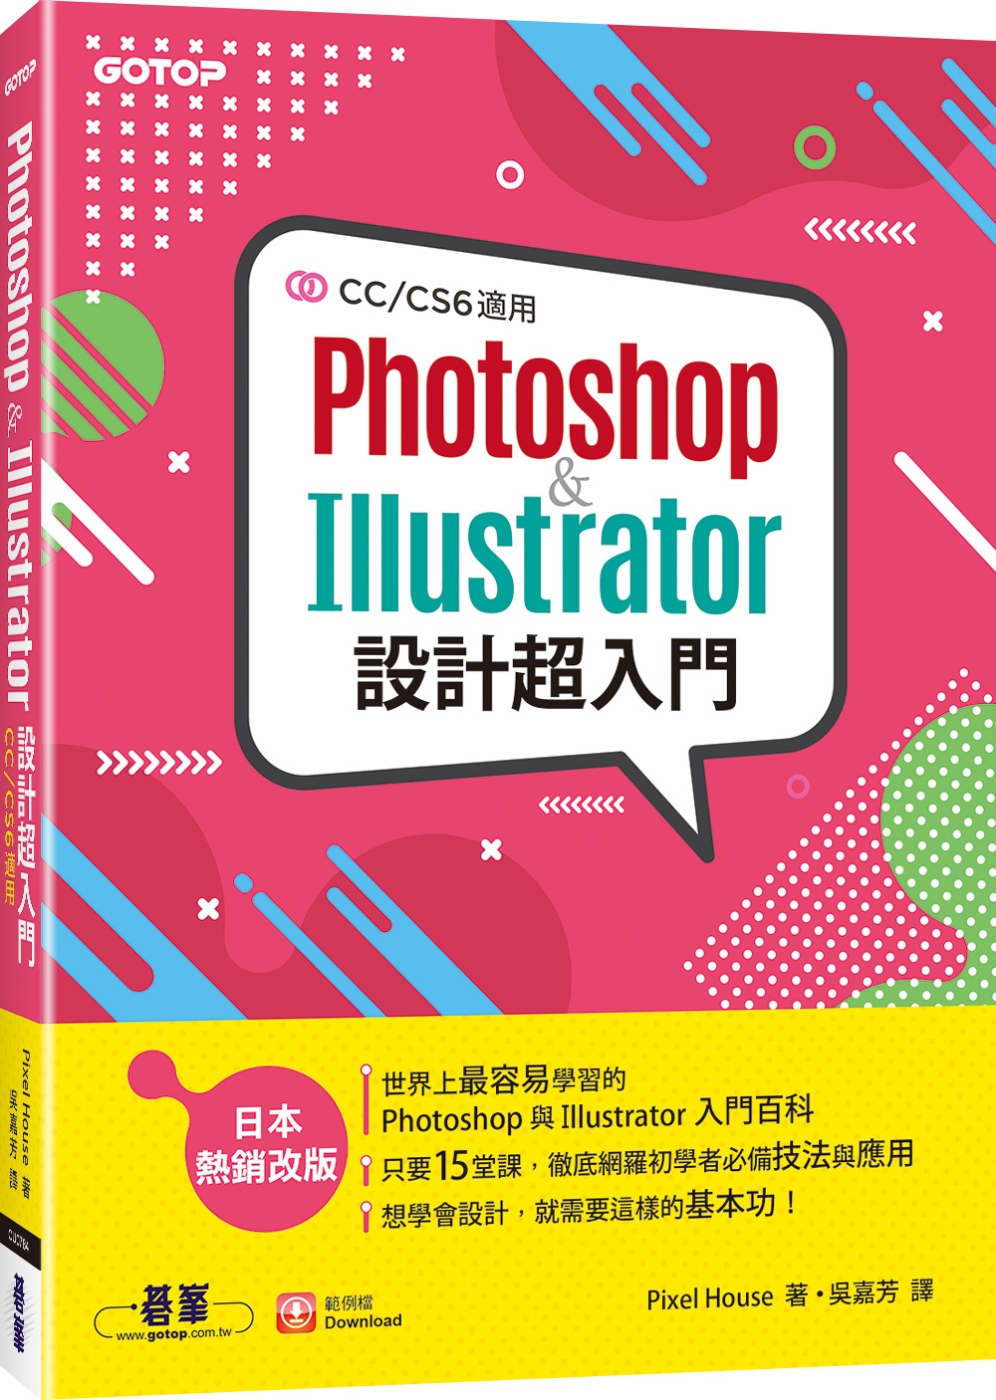 Photoshop & Illustrator設計超入門(CC/CS6適用)